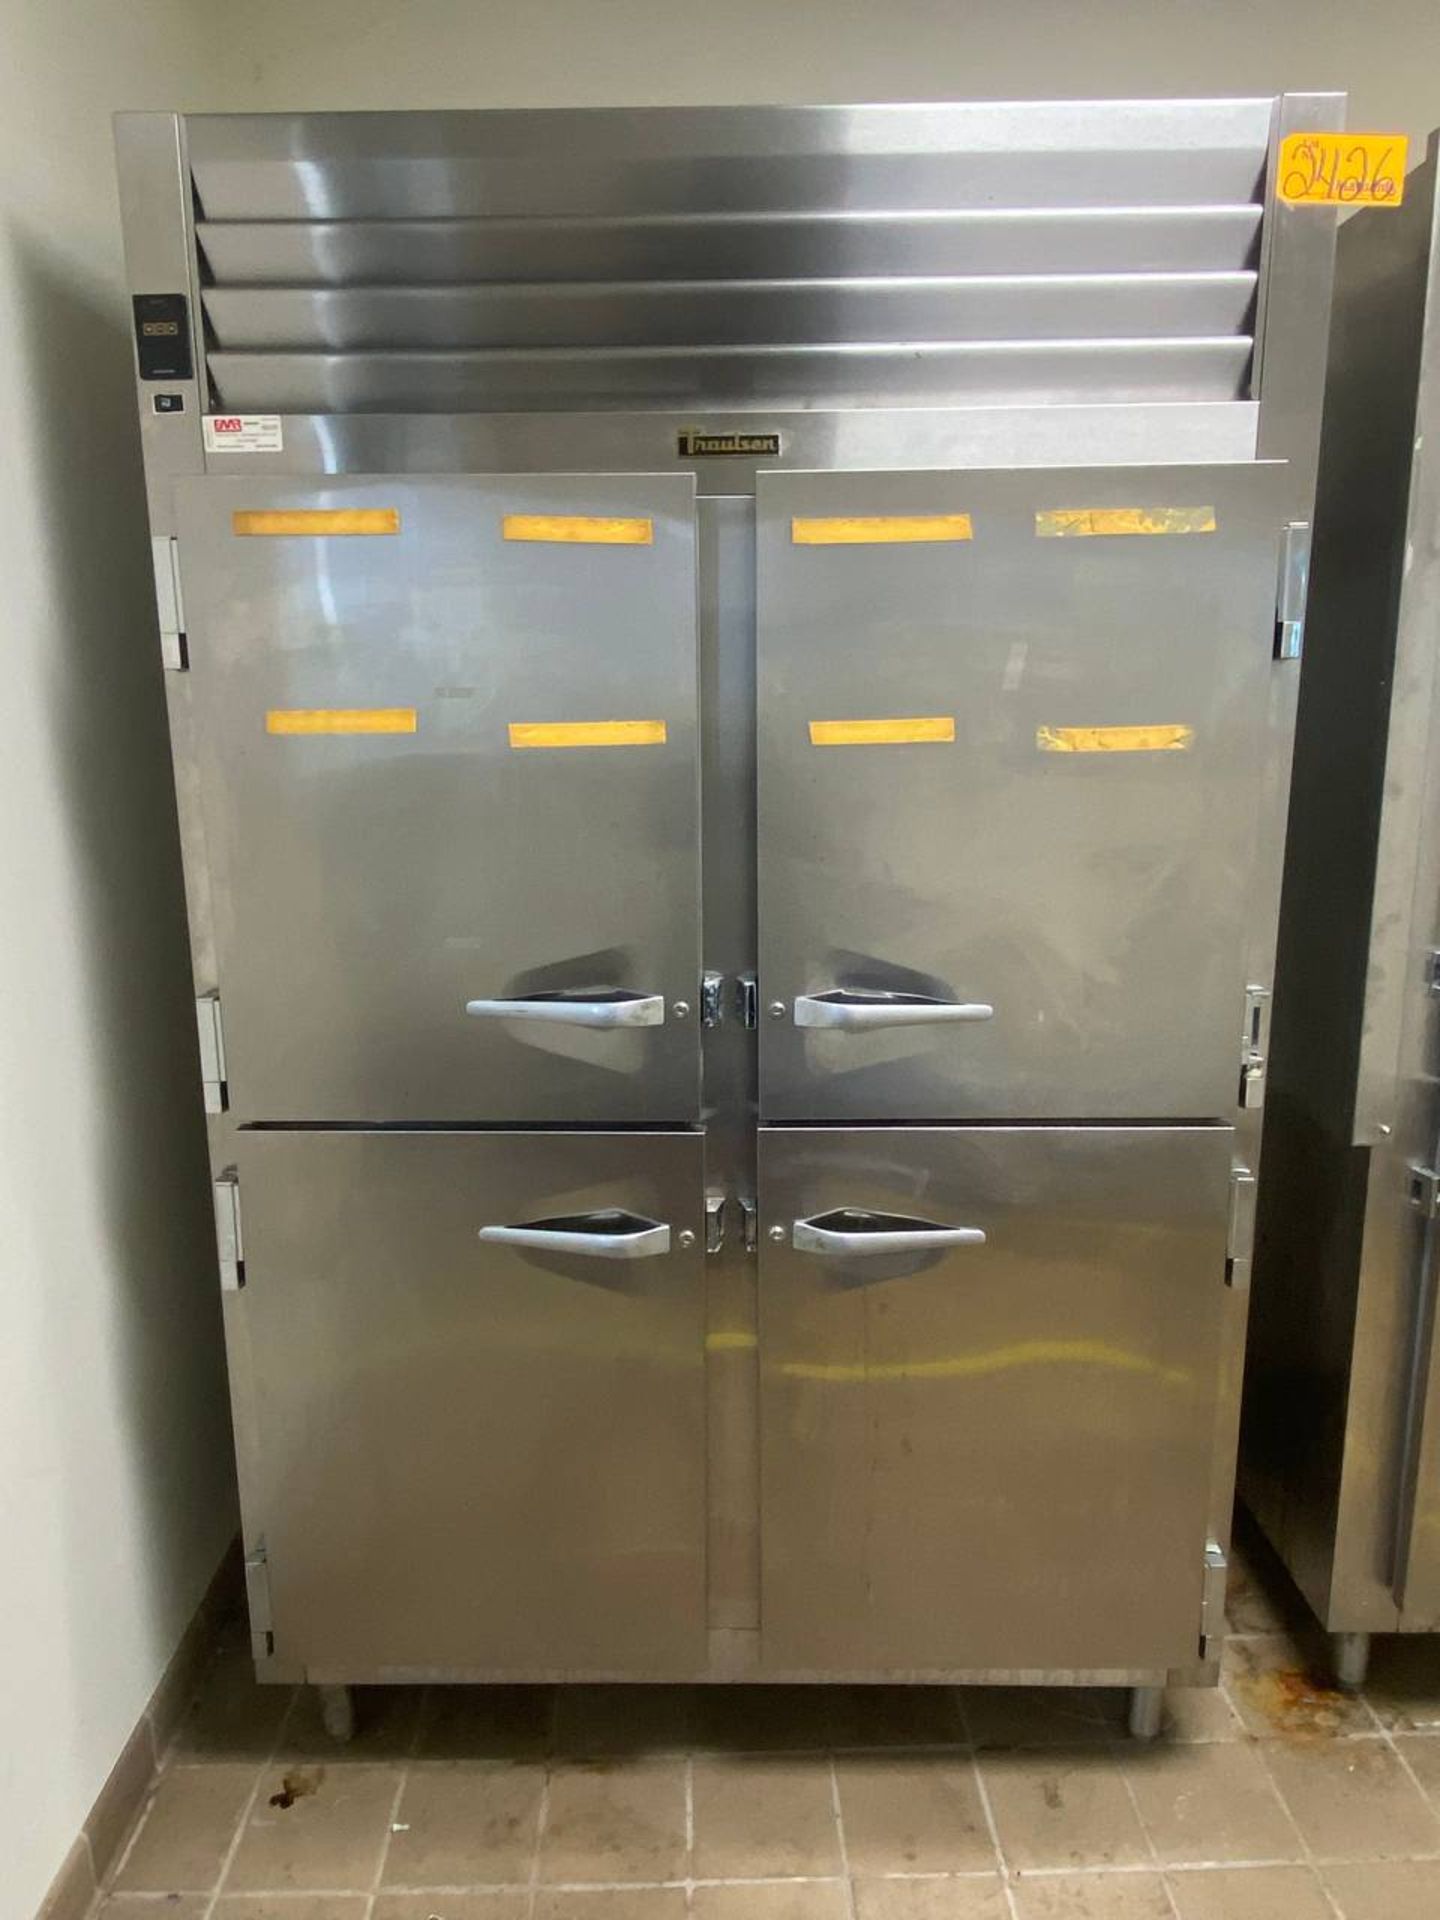 Traulsen SG2000 (1) 52''W x 32''D x 7' H 4-Door Refrigerator - Image 3 of 3